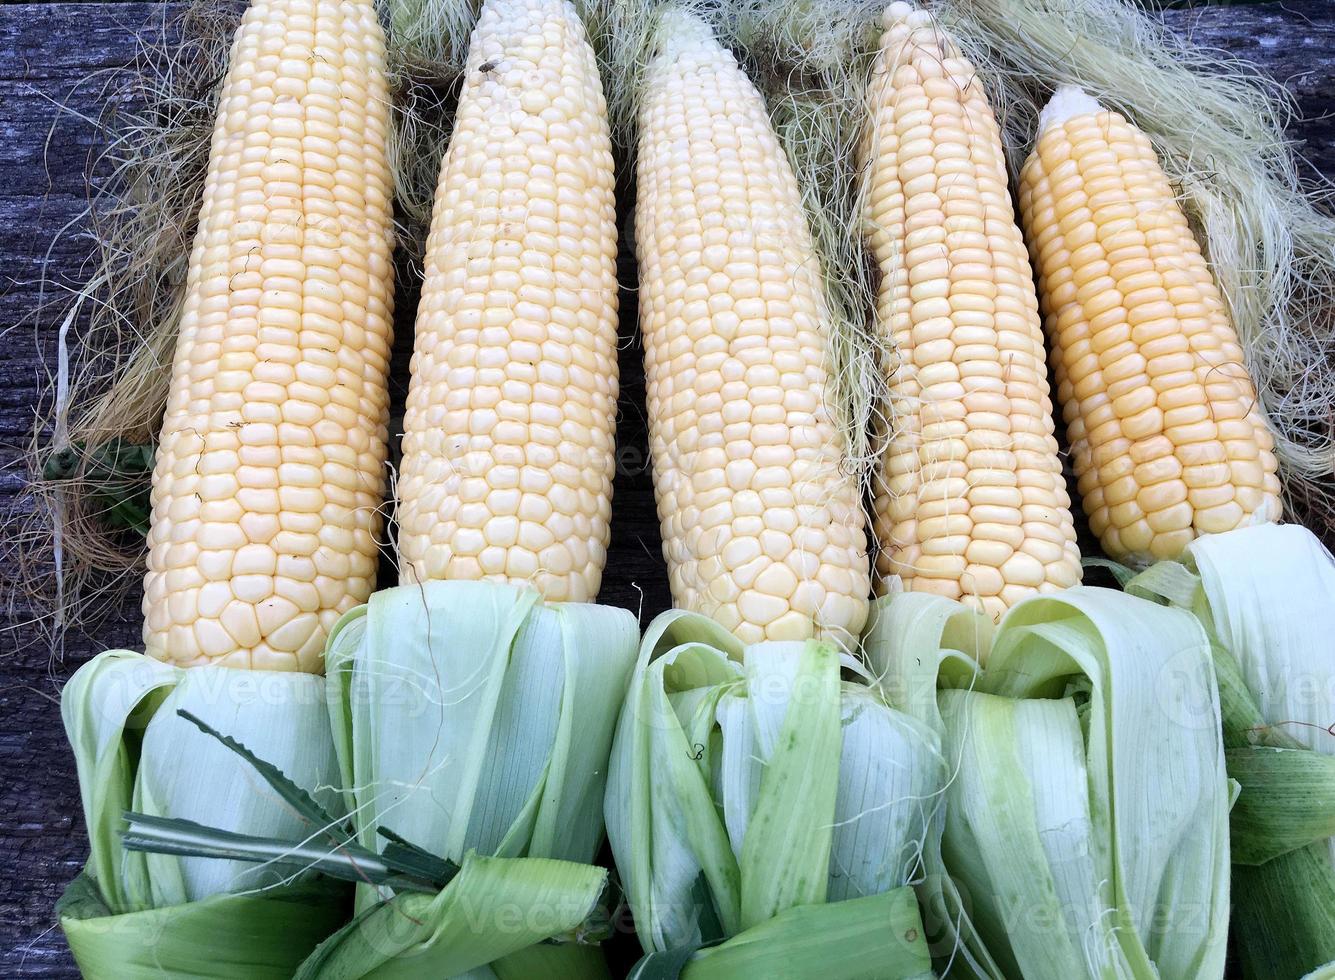 Maïs frais poilu en épis avec des feuilles vertes nouées couché photo